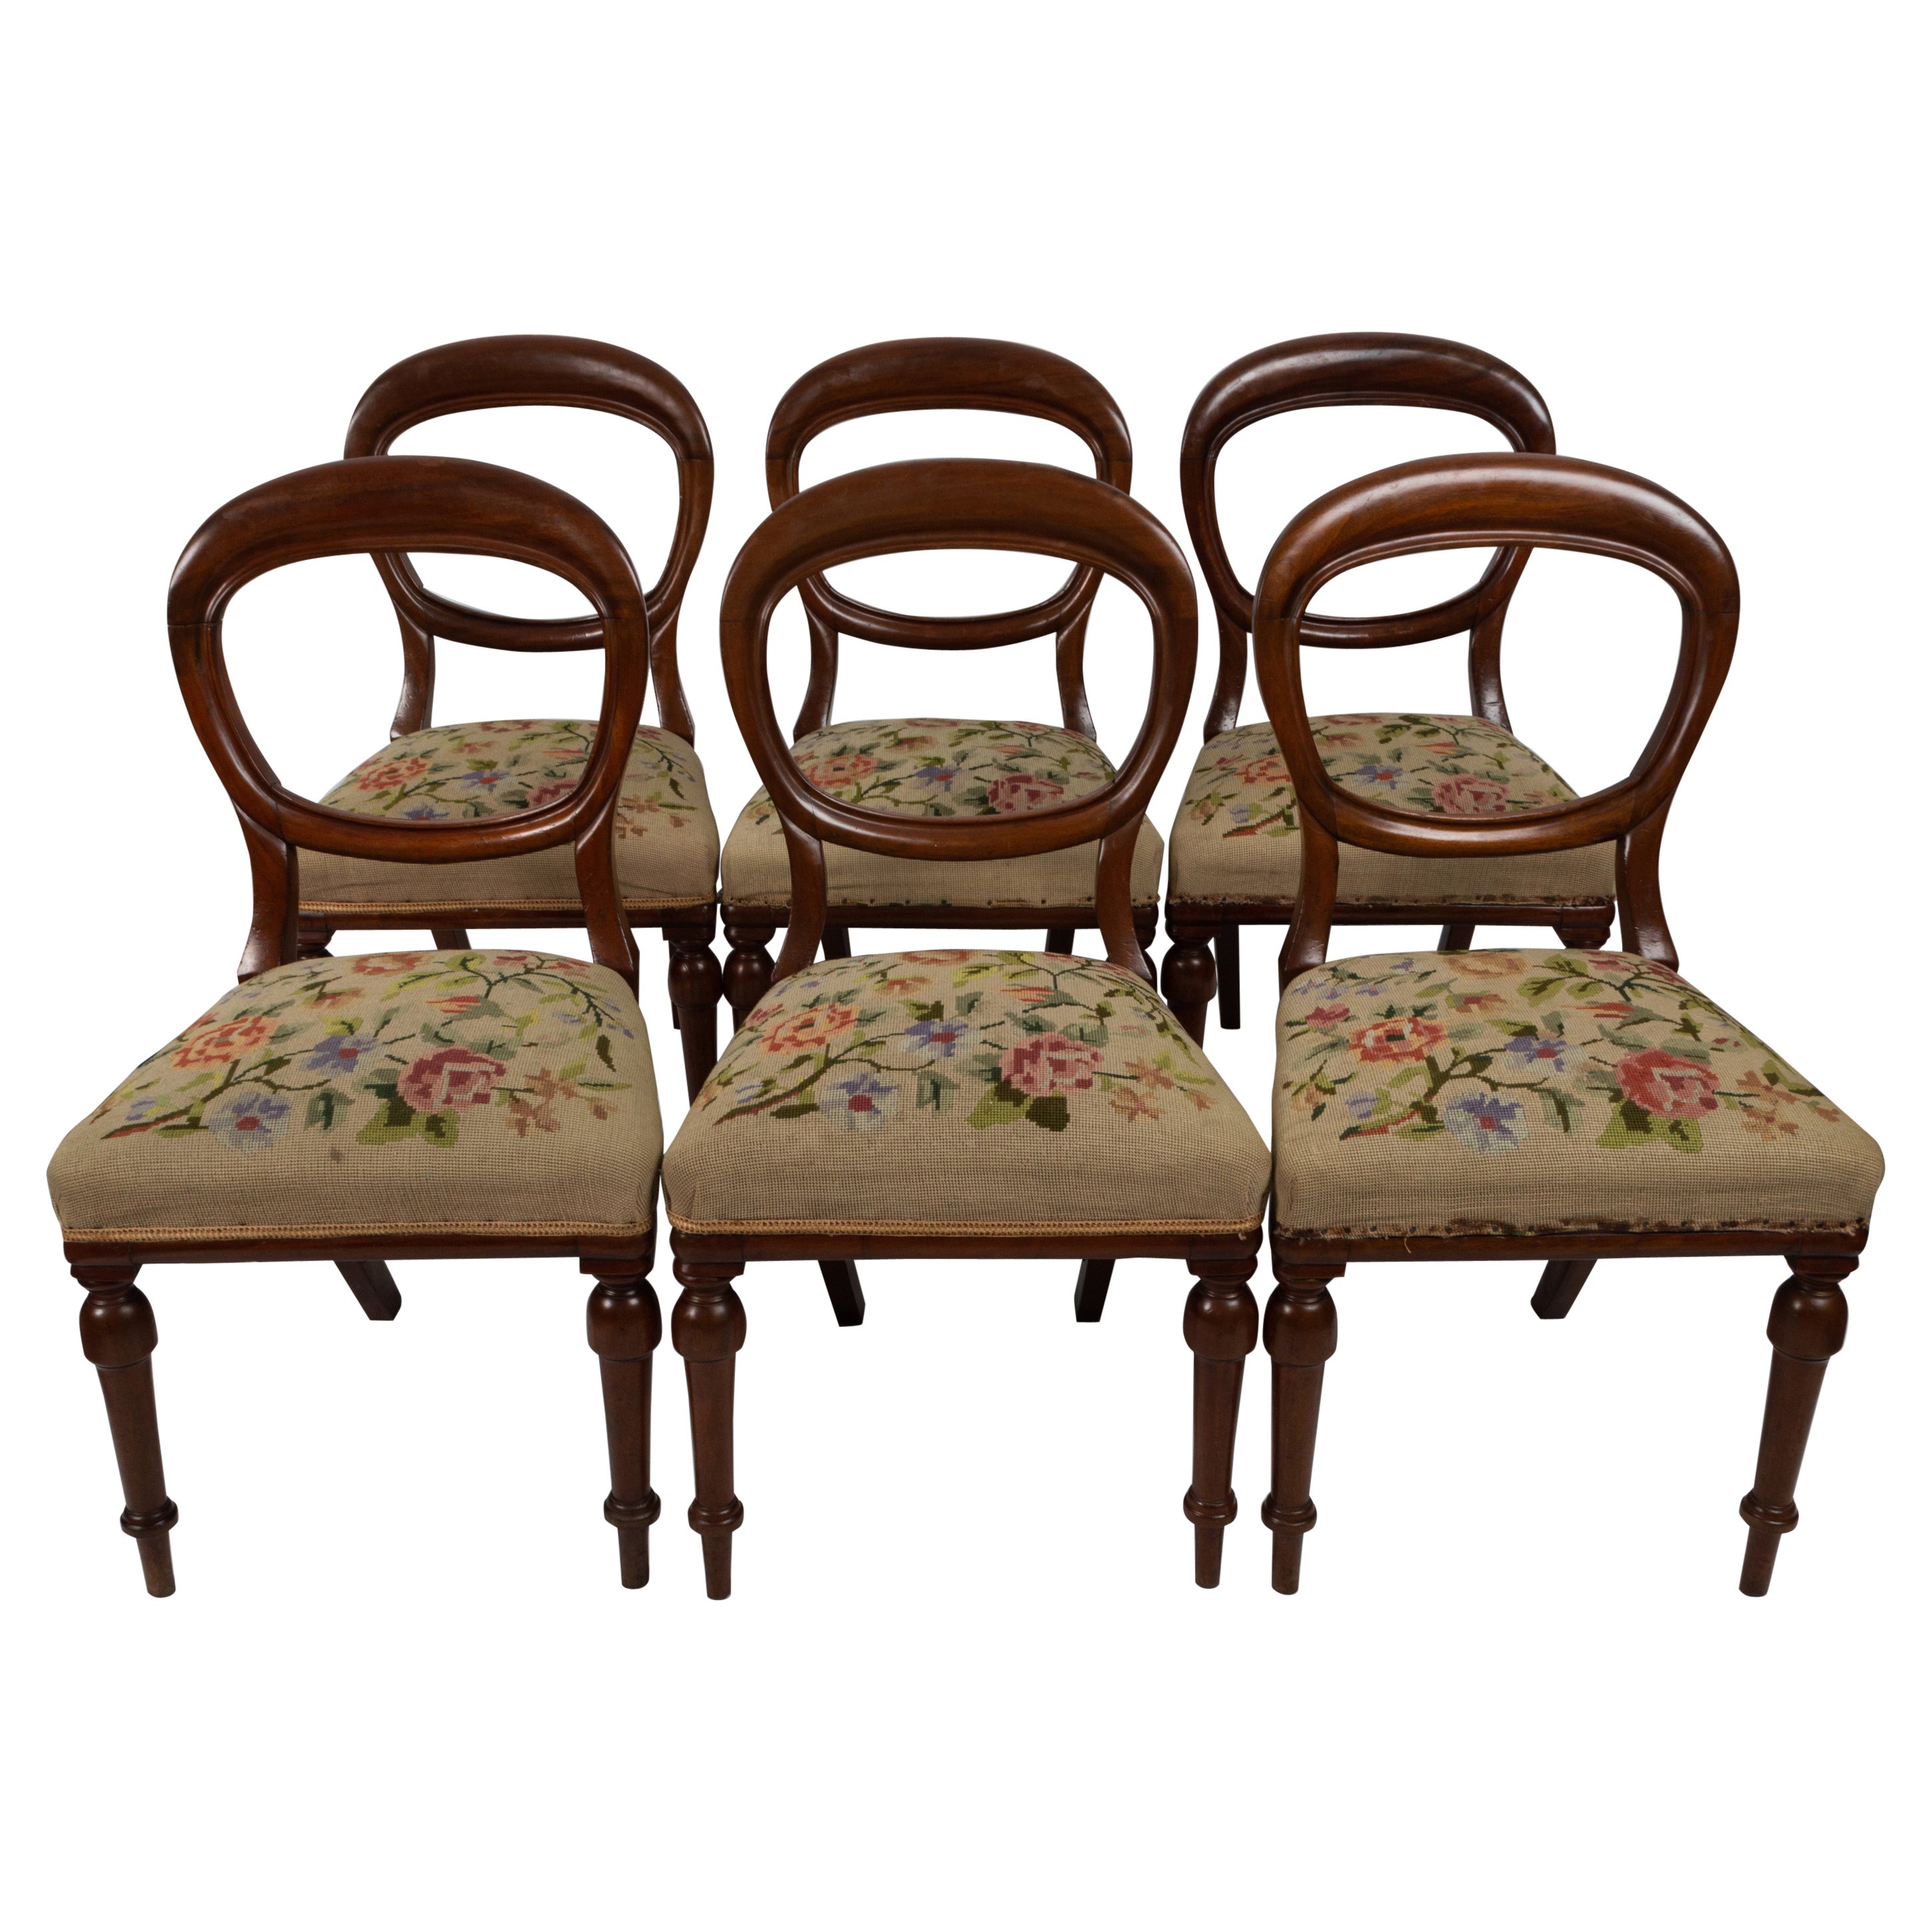 Ensemble de six anciennes chaises à dossier ballon en acajou anglais du 19e siècle vers 1860